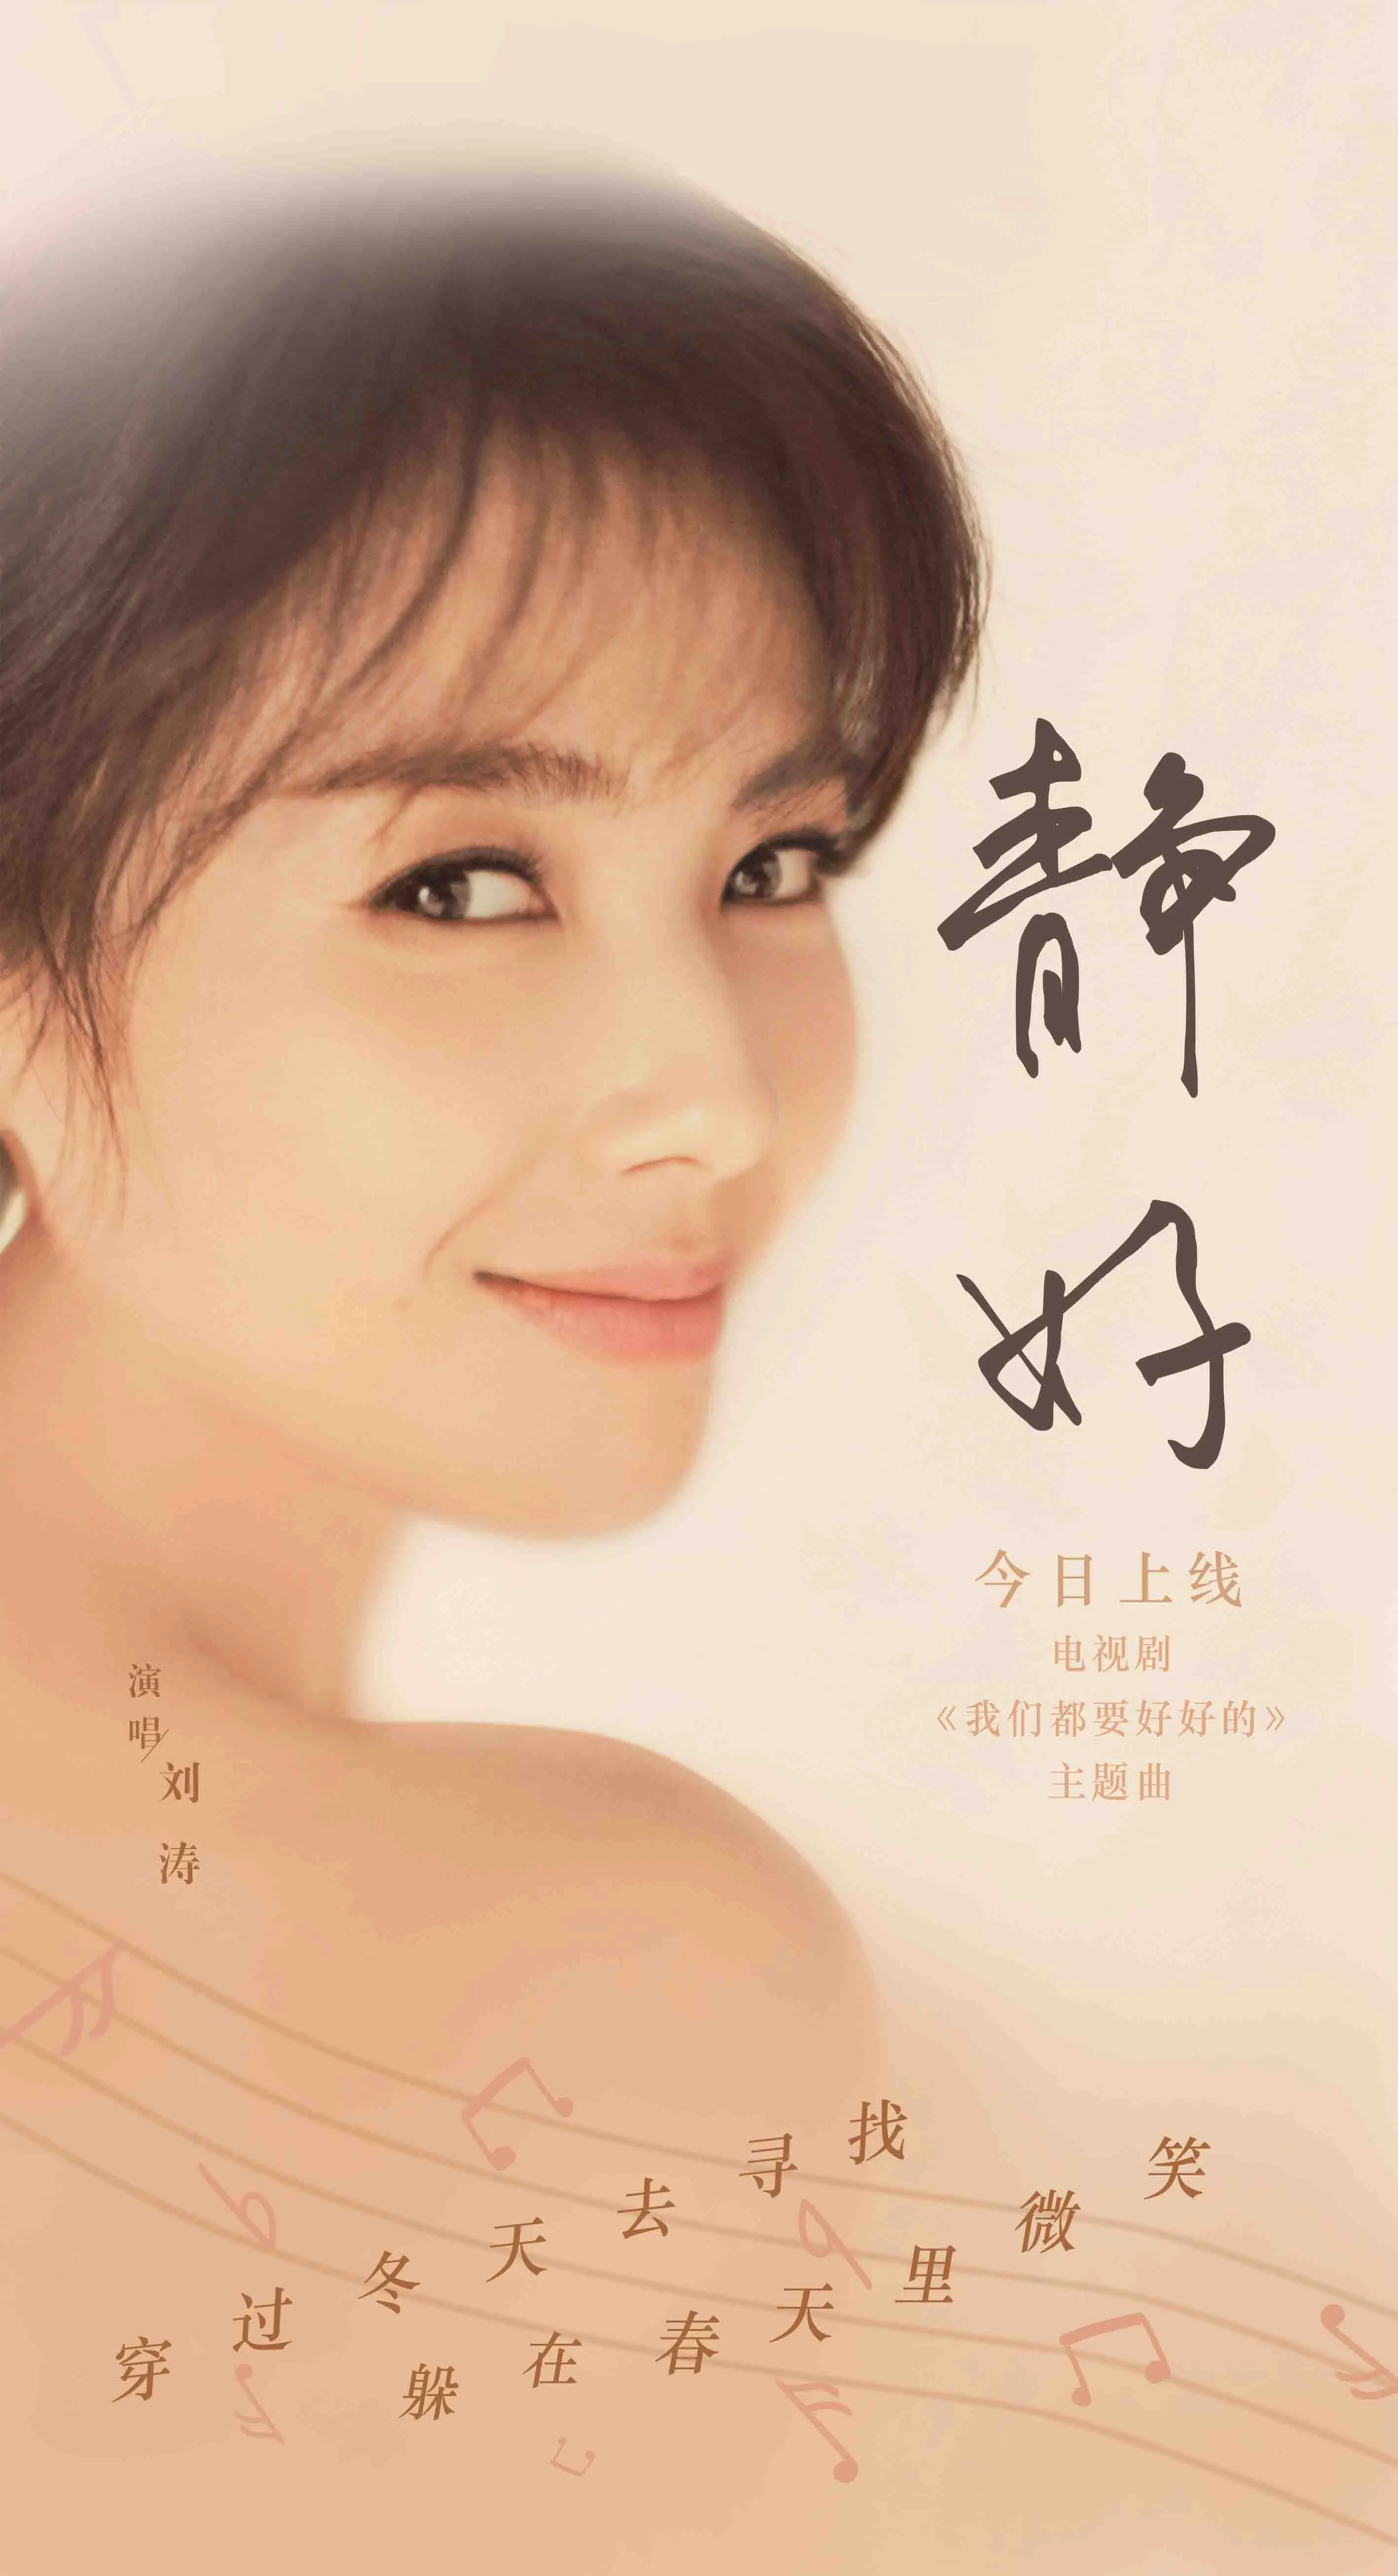  Tamia Liu 献声新剧主题曲《静好》 跨界歌王传递温暖情感.jpg